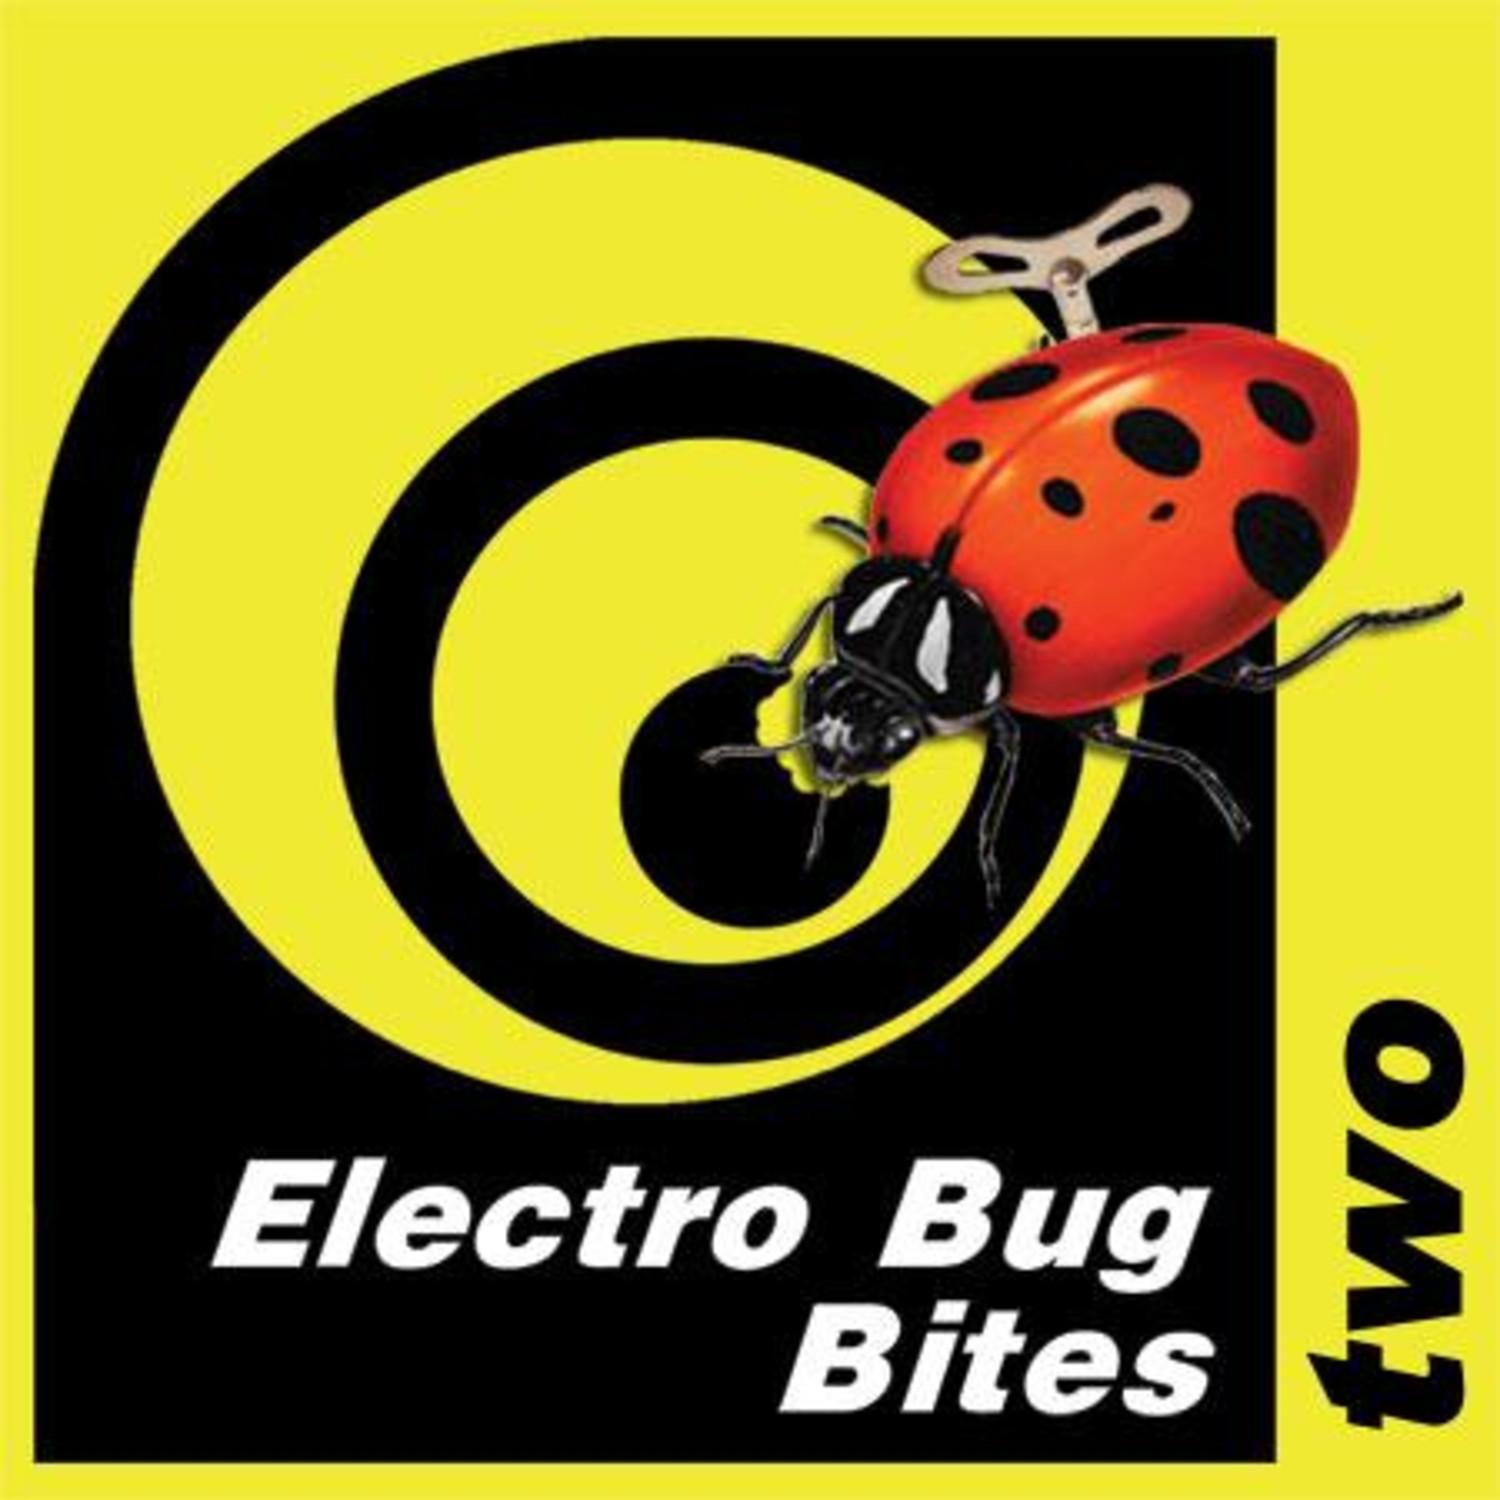 Electro Bug Bites Two